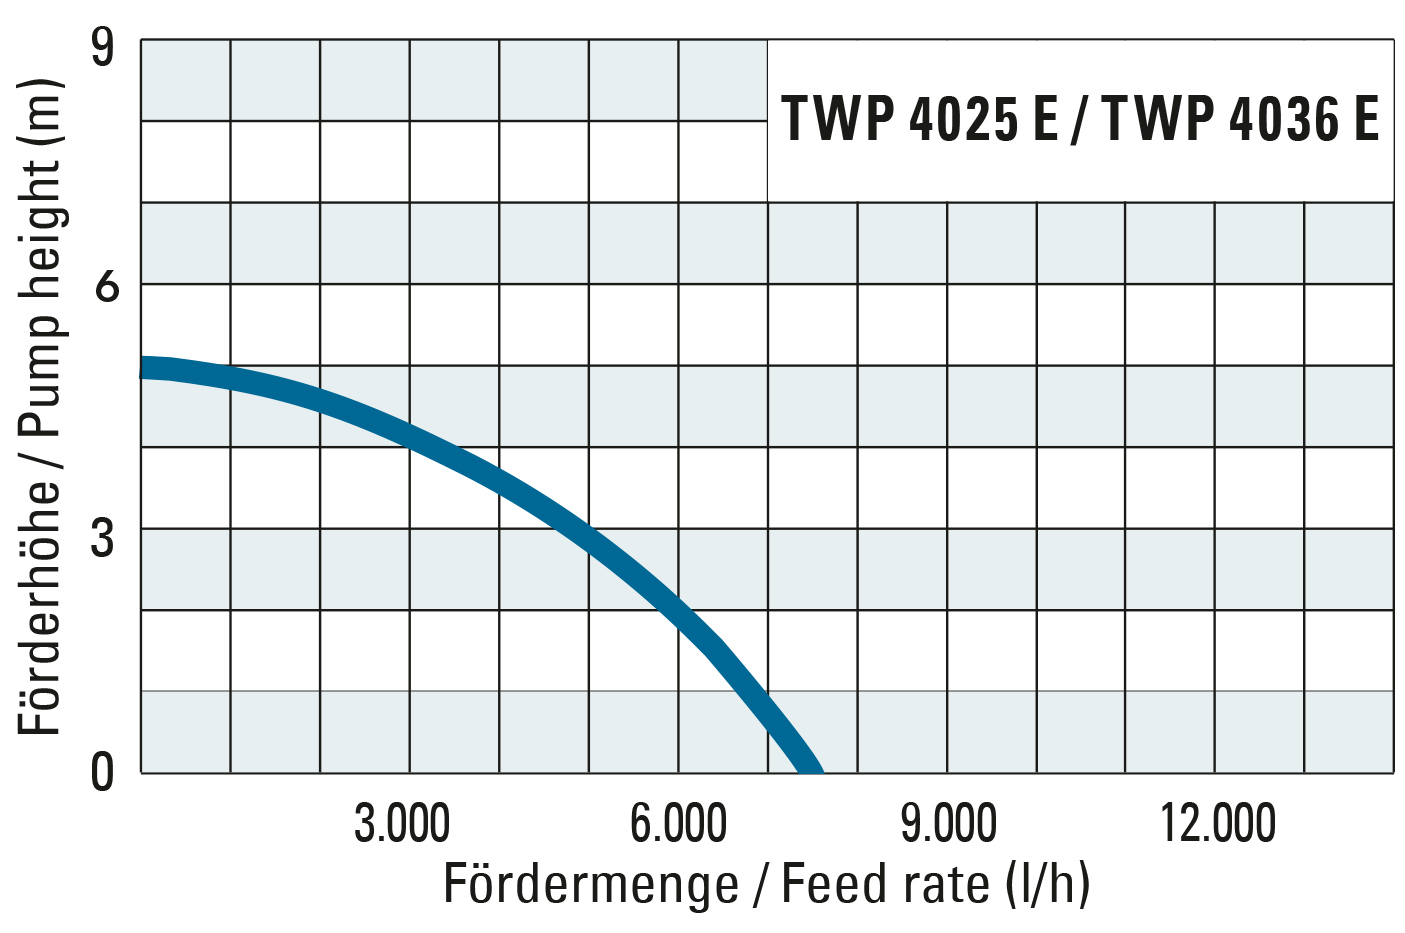 Förderhöhe und Fördermenge der TWP 4025 E